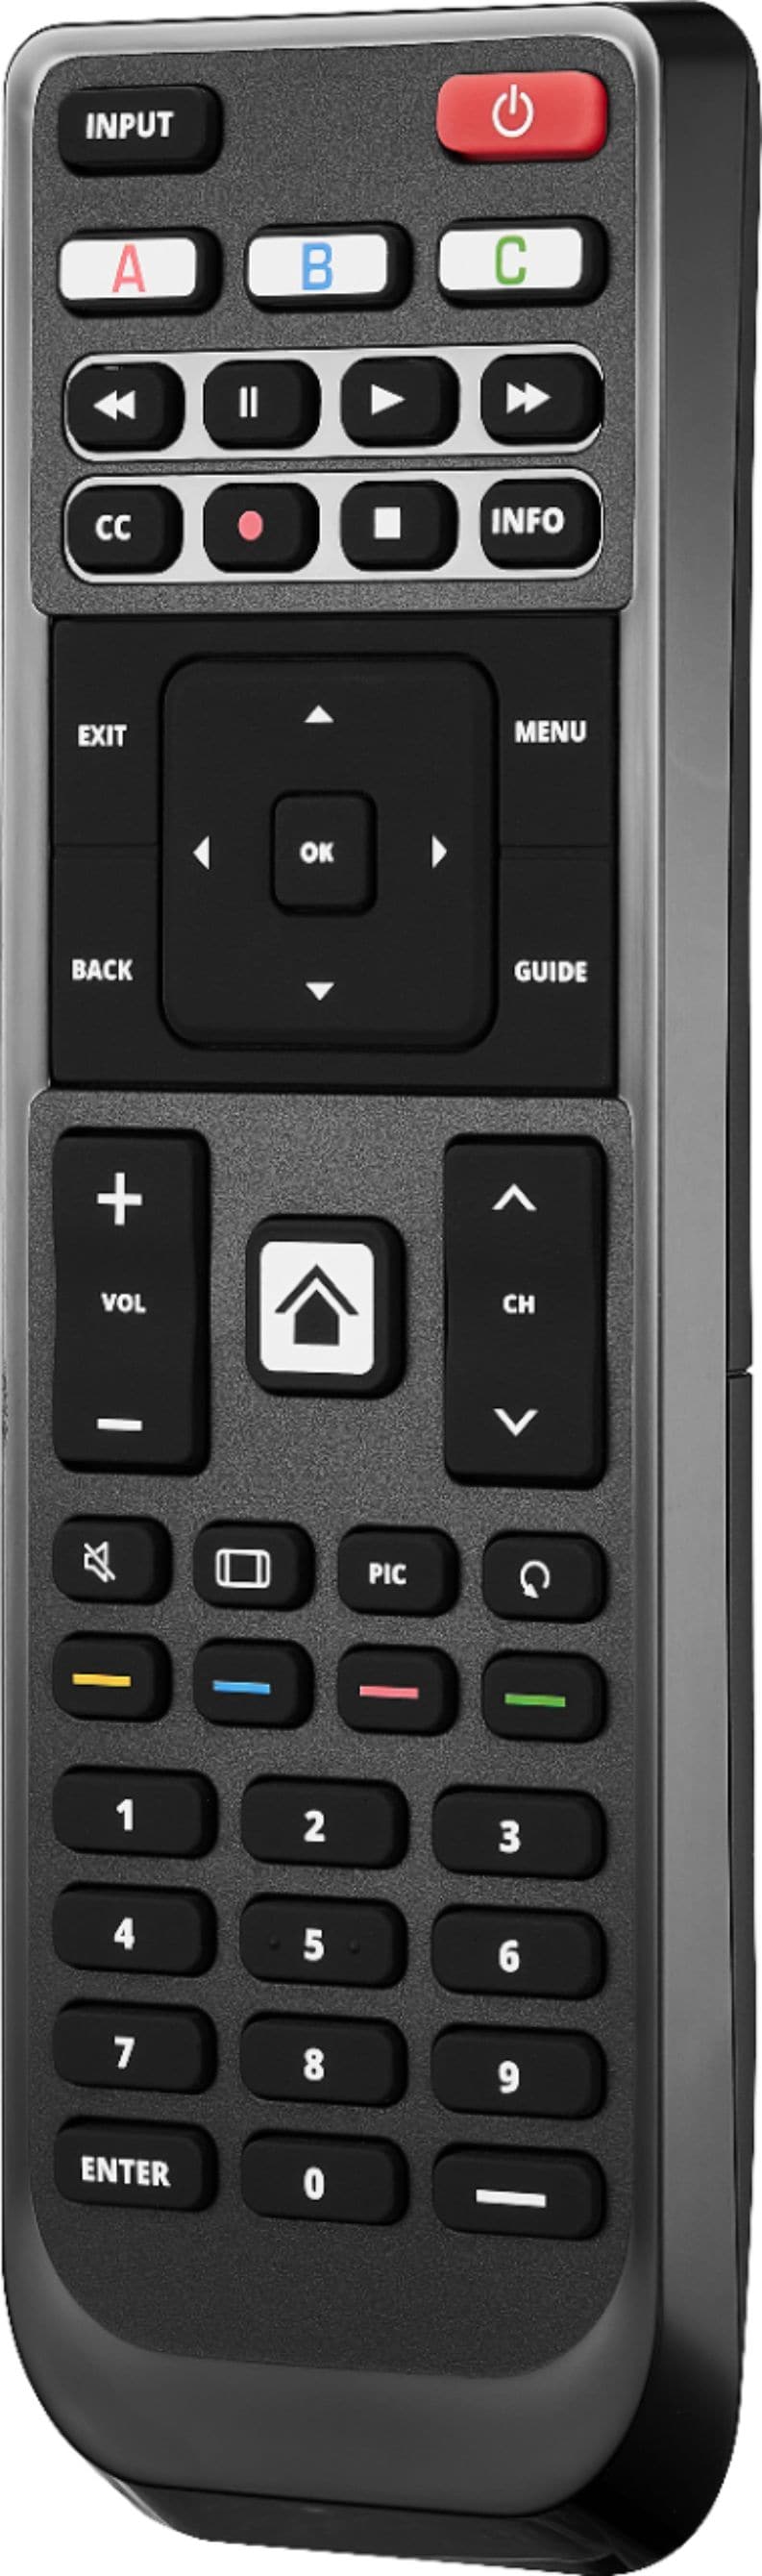 Insignia™ - Replacement Remote for Vizio TVs - Black_4